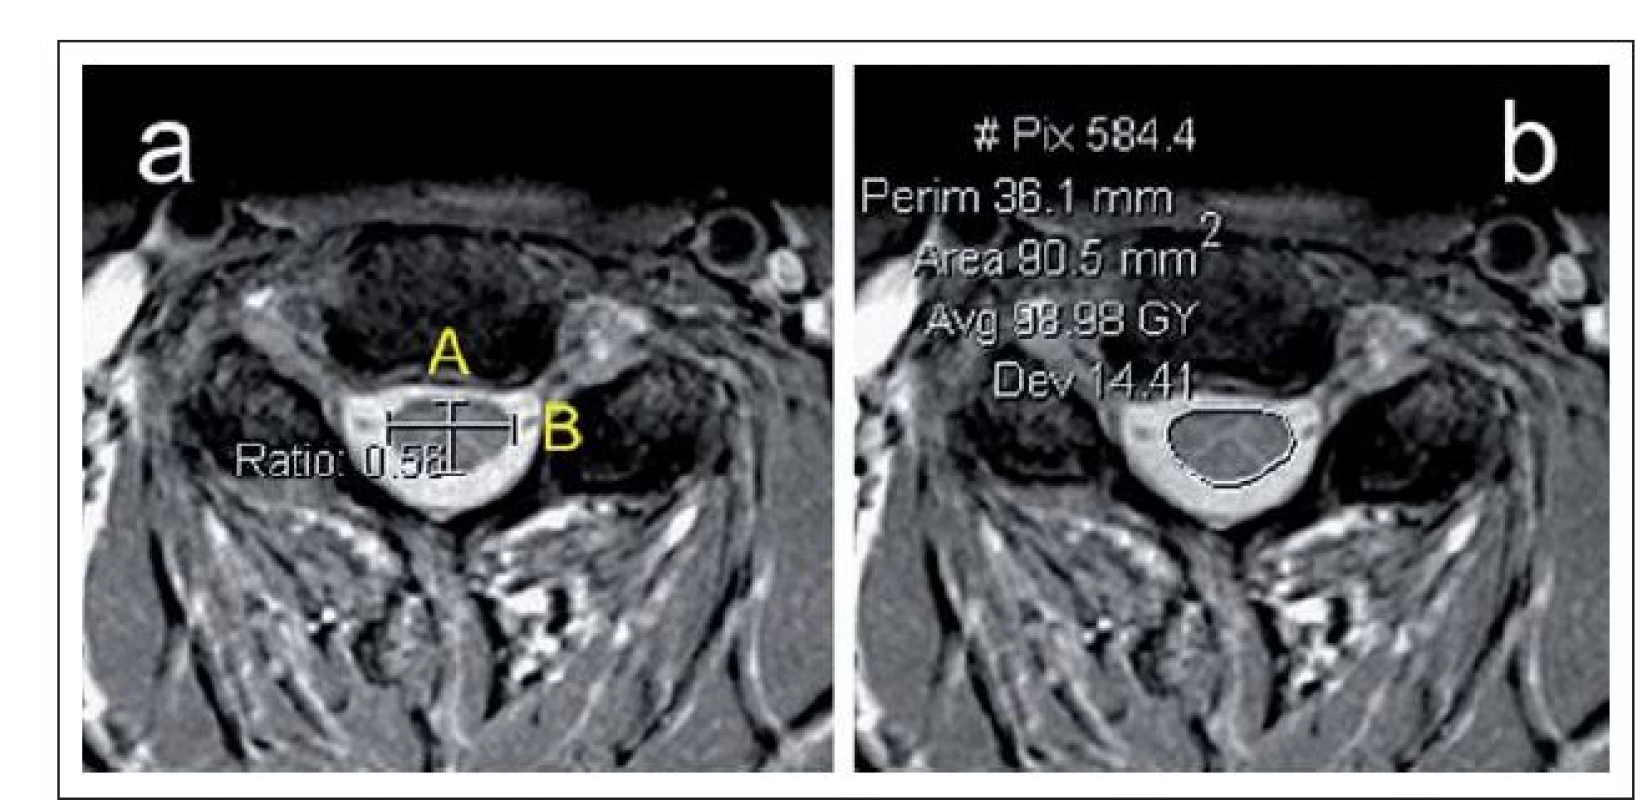 a,b) Axiální T2 zobrazení MR krční páteře s ukázkou měření kompresního poměru
(a) a plochy míchy (b).